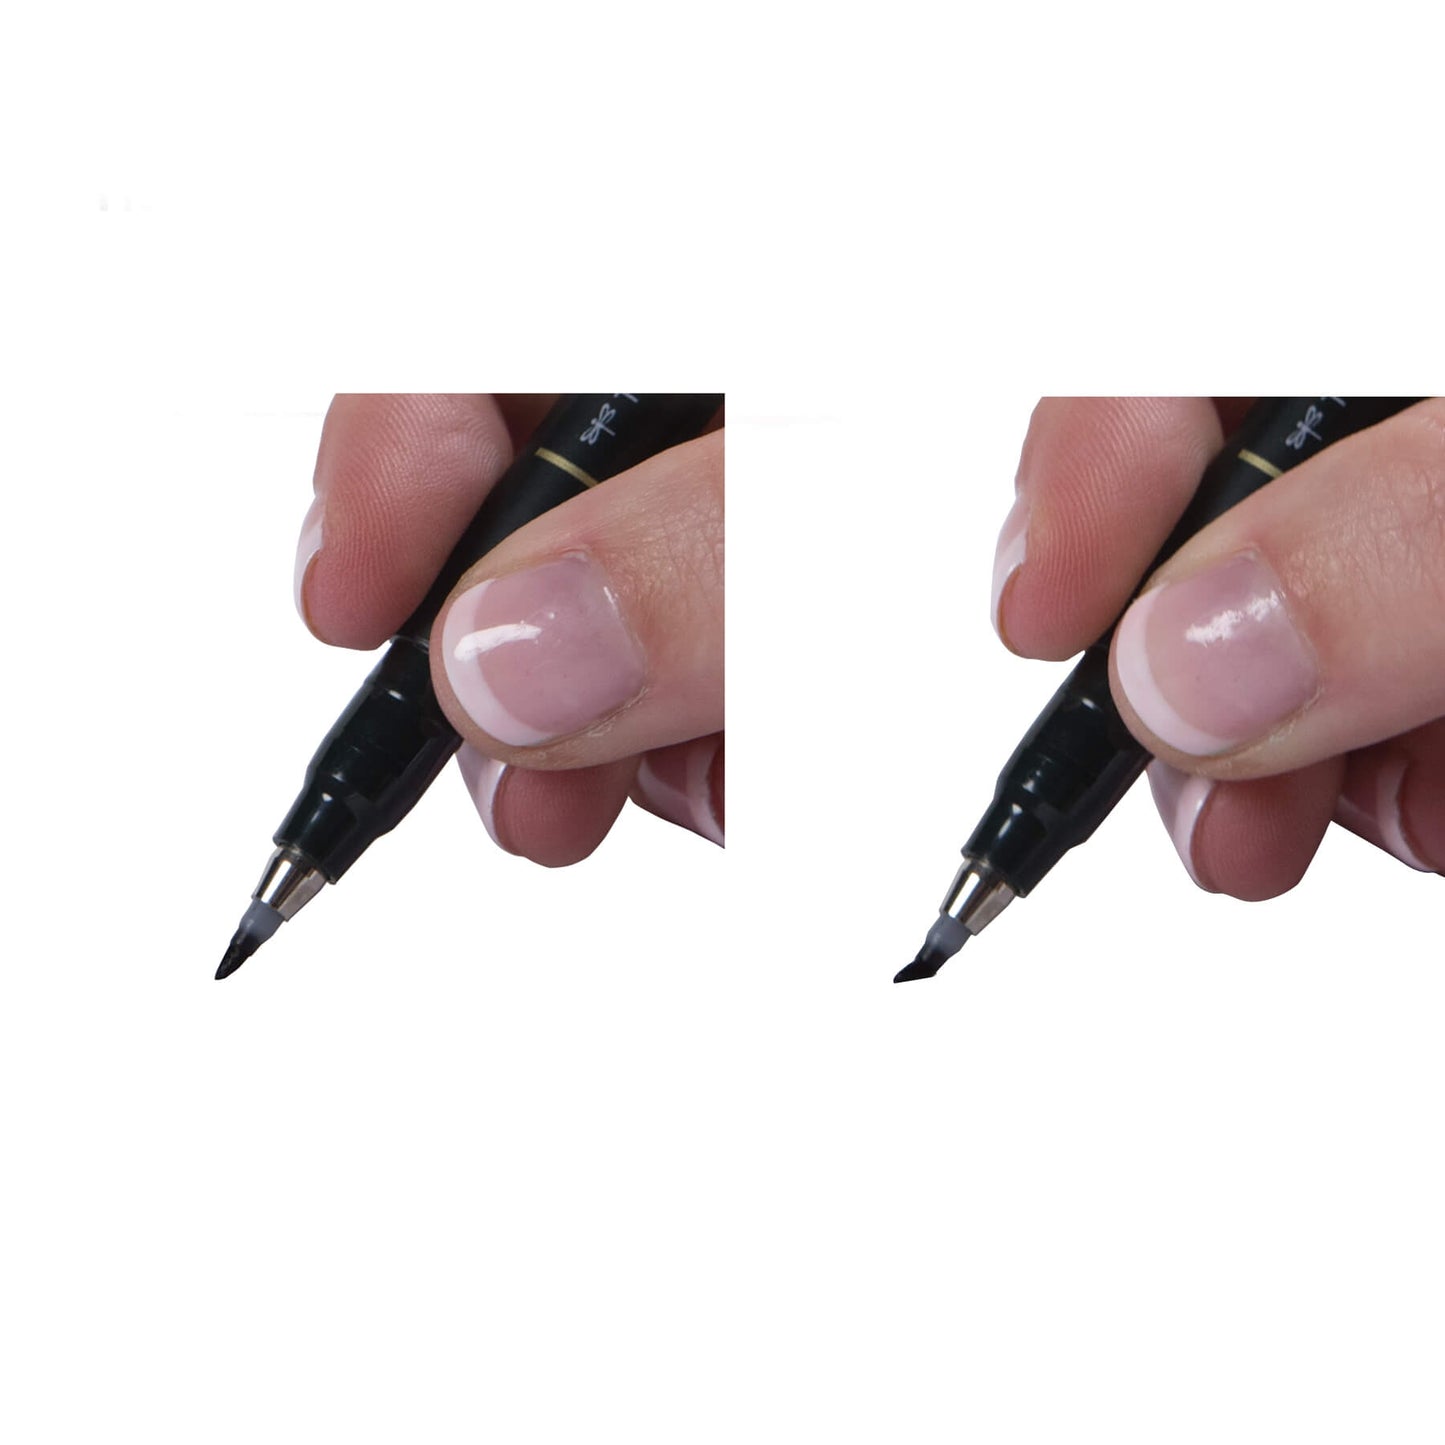 Tombow Fudenosuke Soft Brush Pen Black - Tip brush on paper